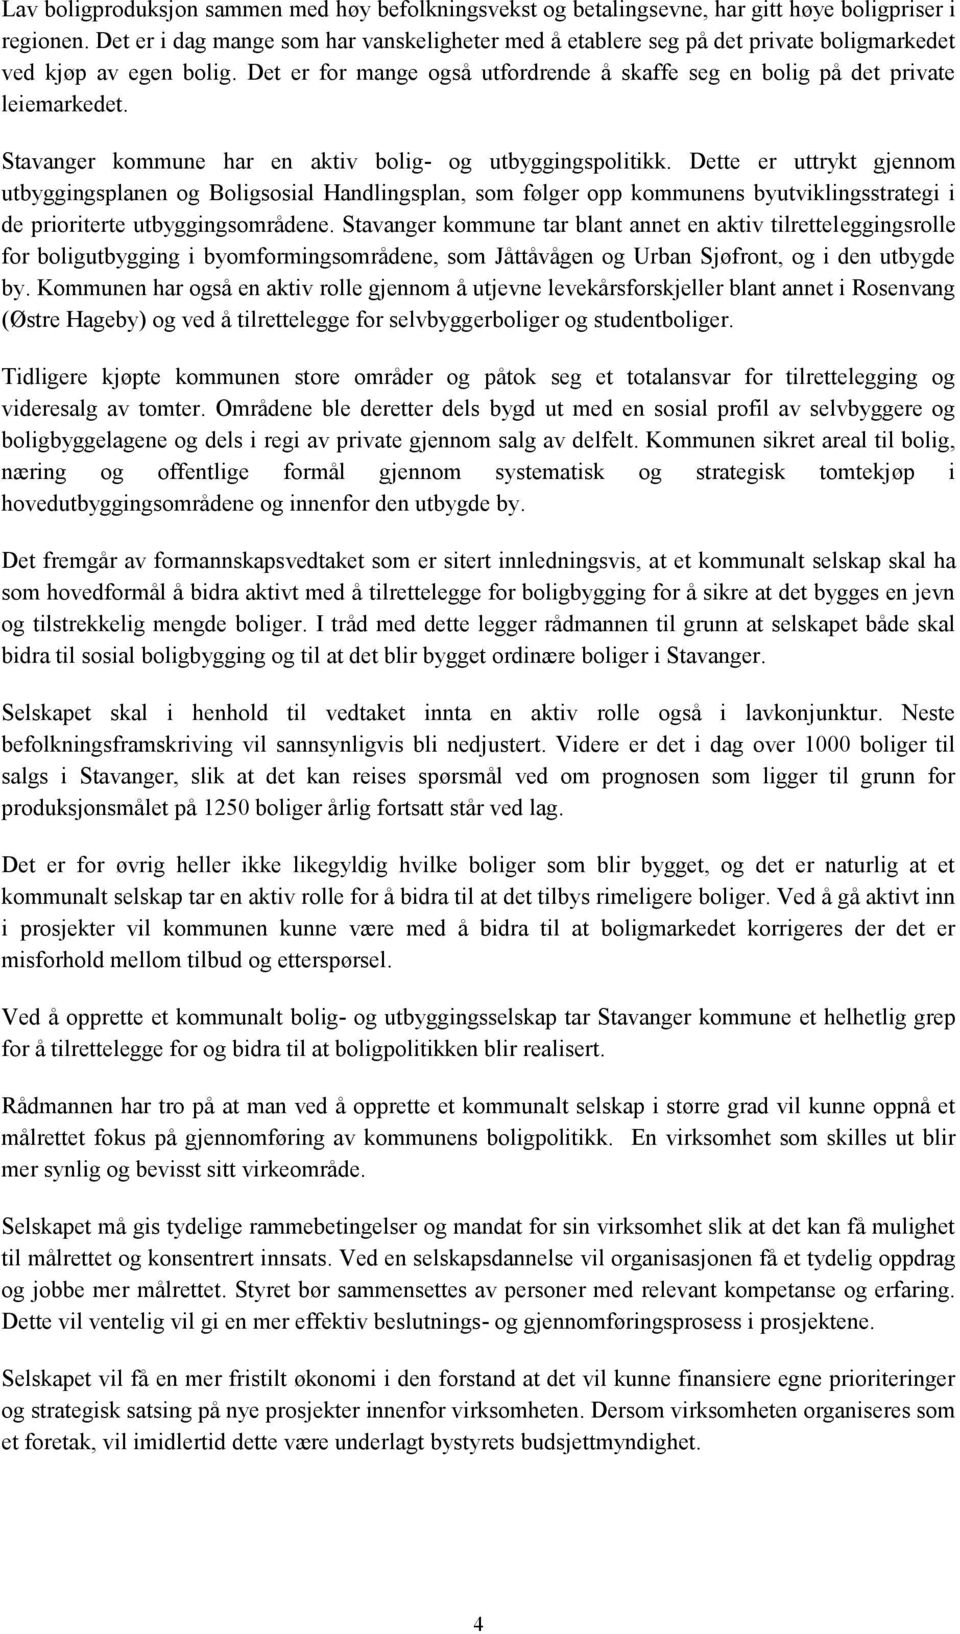 Stavanger kommune har en aktiv bolig- og utbyggingspolitikk.